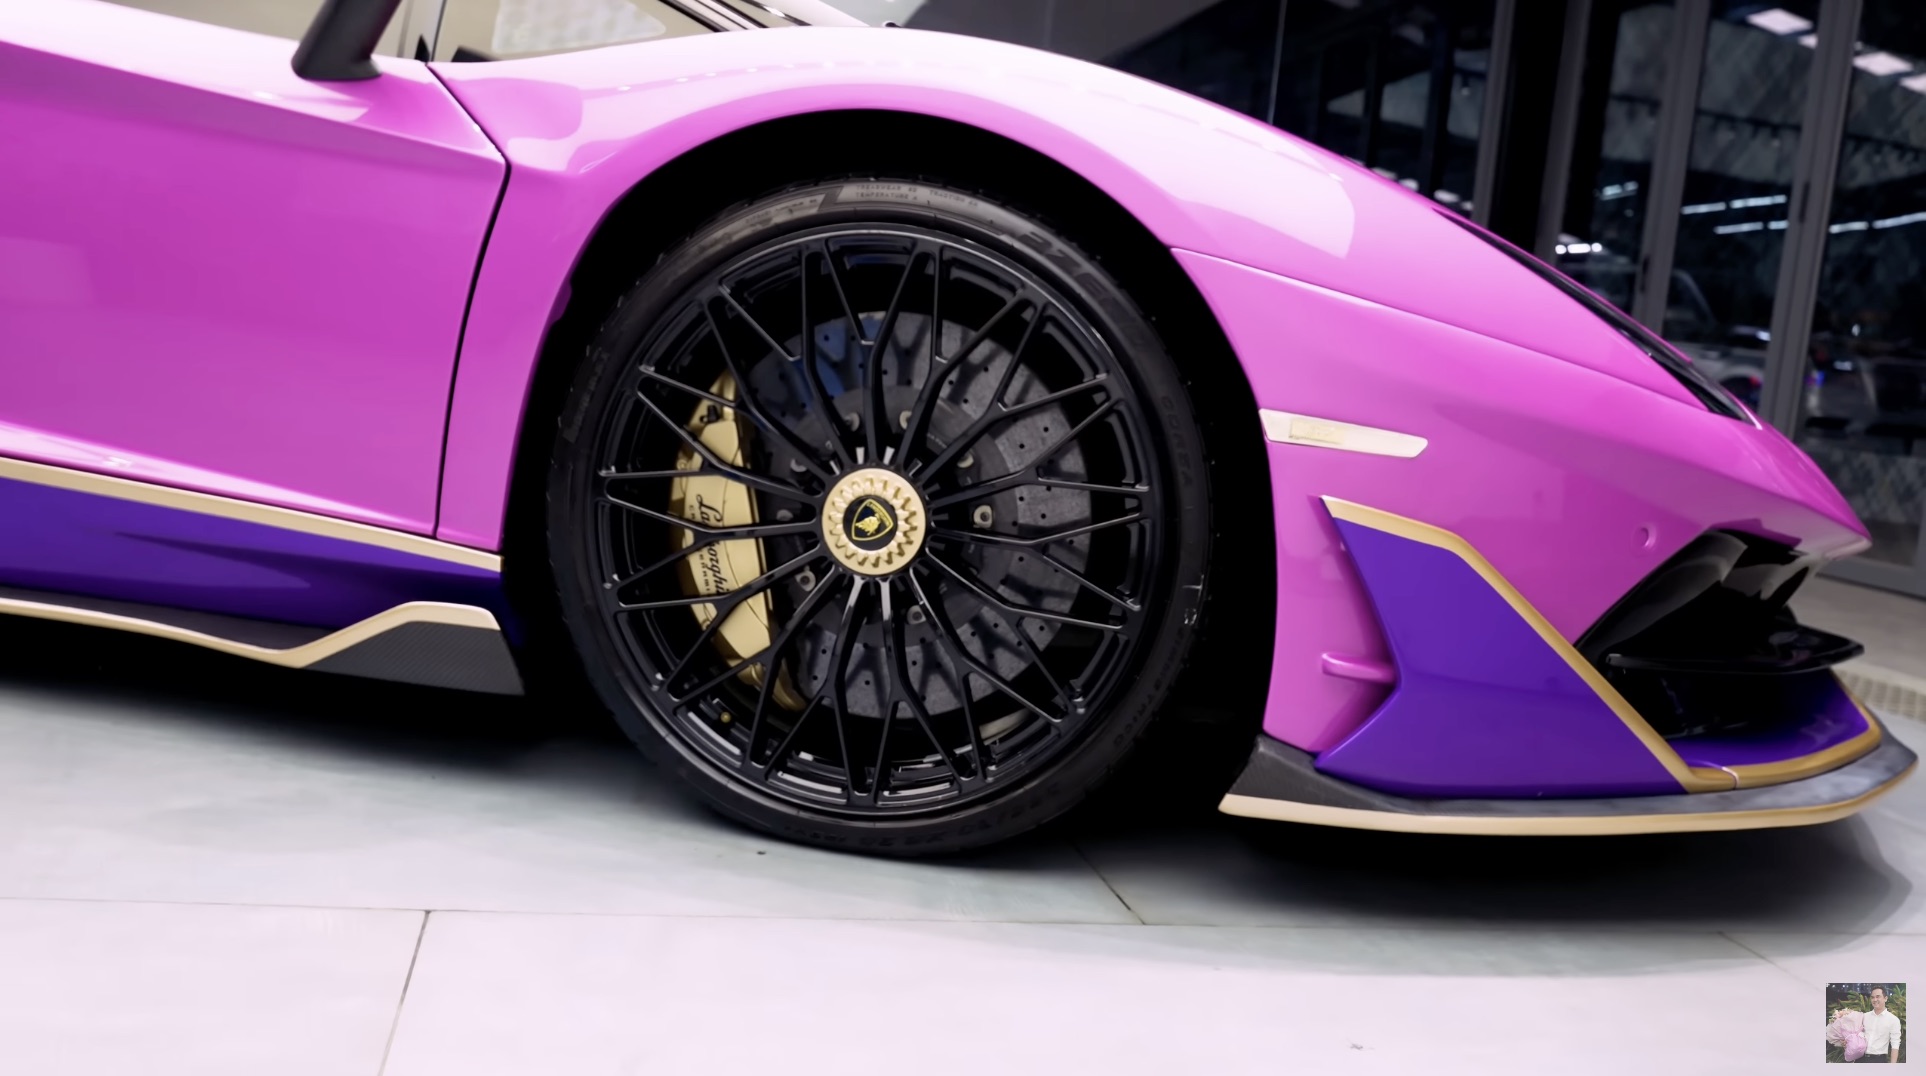 Chủ xe Lamborghini Aventador đưa yêu cầu độ khó, chủ xưởng tại TP. HCM nhăn mặt nhưng kết quả mỹ mãn - Ảnh 4.